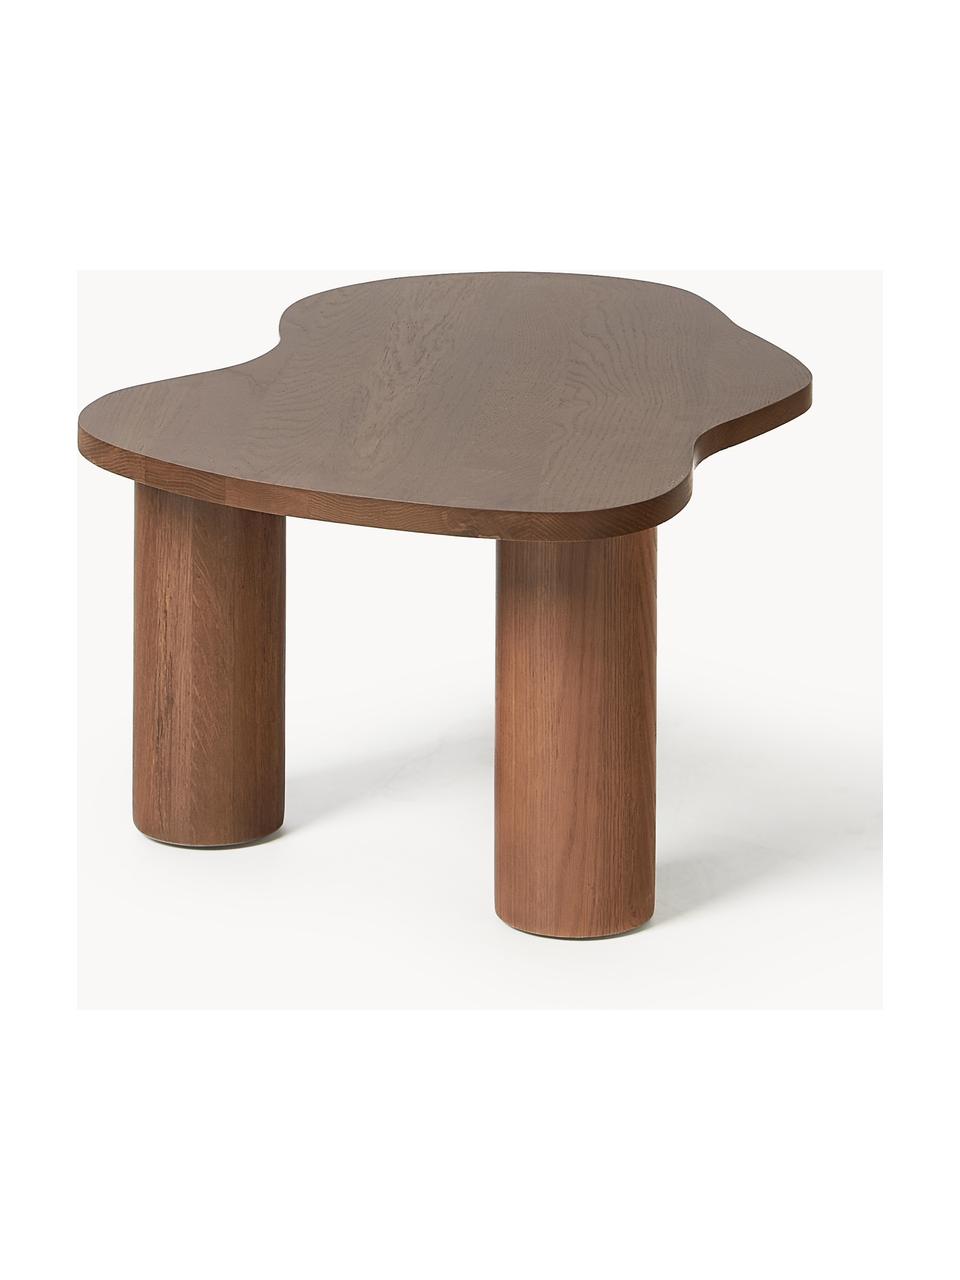 Konferenčný stolík z dubového dreva Didi, Masívne dubové drevo, ošetrené olejom

Tento produkt je vyrobený z trvalo udržateľného dreva s certifikátom FSC®., Orechové drevo, Š 90 x H 51 cm